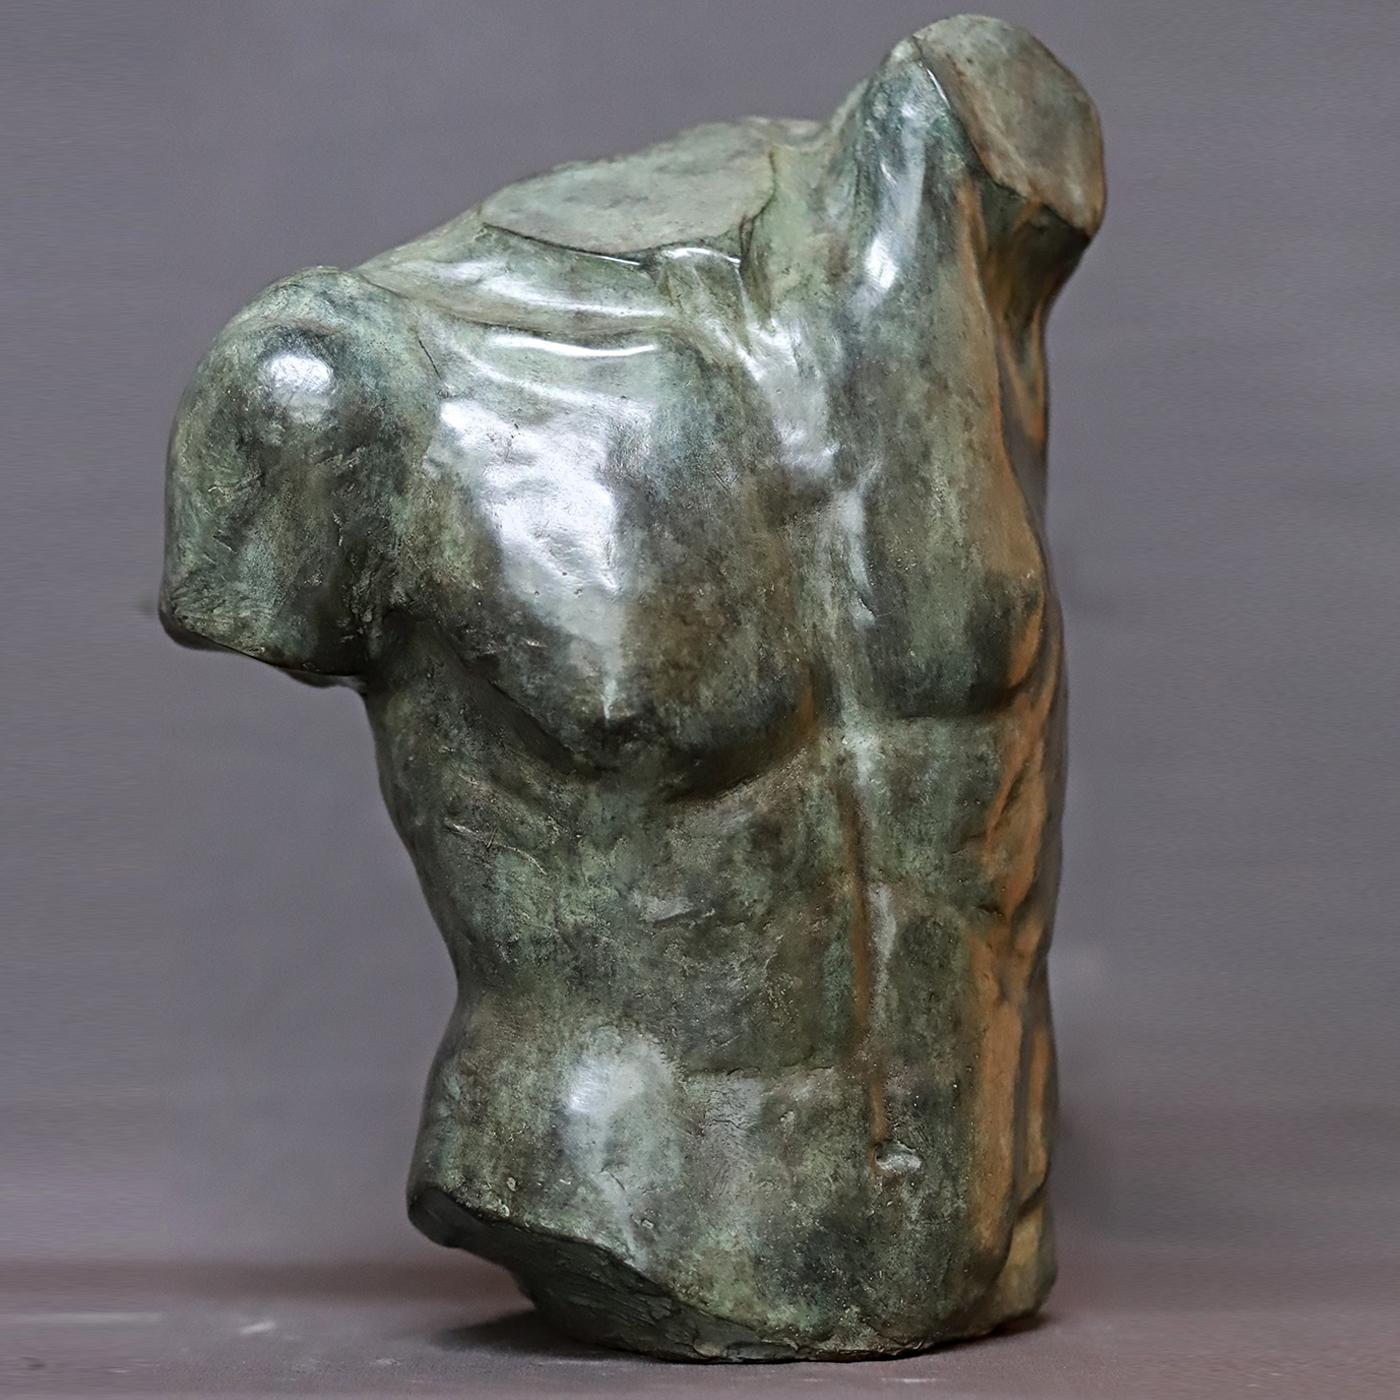 Ce buste fait partie d'une édition limitée de seulement six pièces créée en 2011 à partir d'un modèle original du sculpteur Raffaello Romanelli. Inspirée du célèbre Torse Gaddi exposé dans la salle des sculptures classiques des musées des Offices à